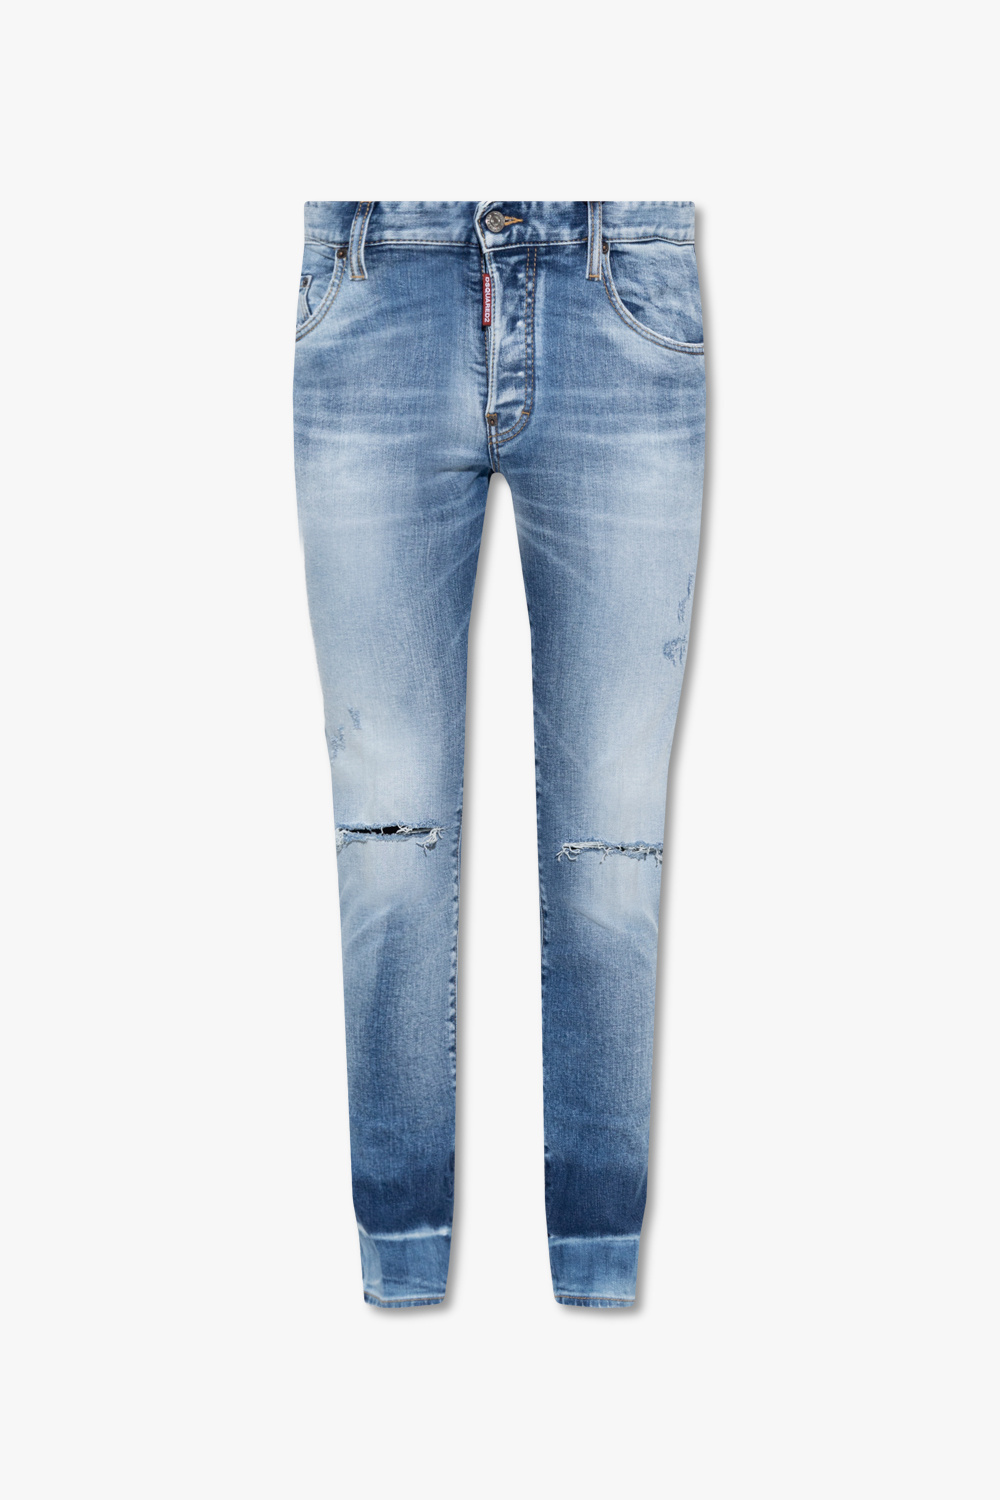 Dsquared2 'Skater' jeans | Men's Clothing | Vitkac